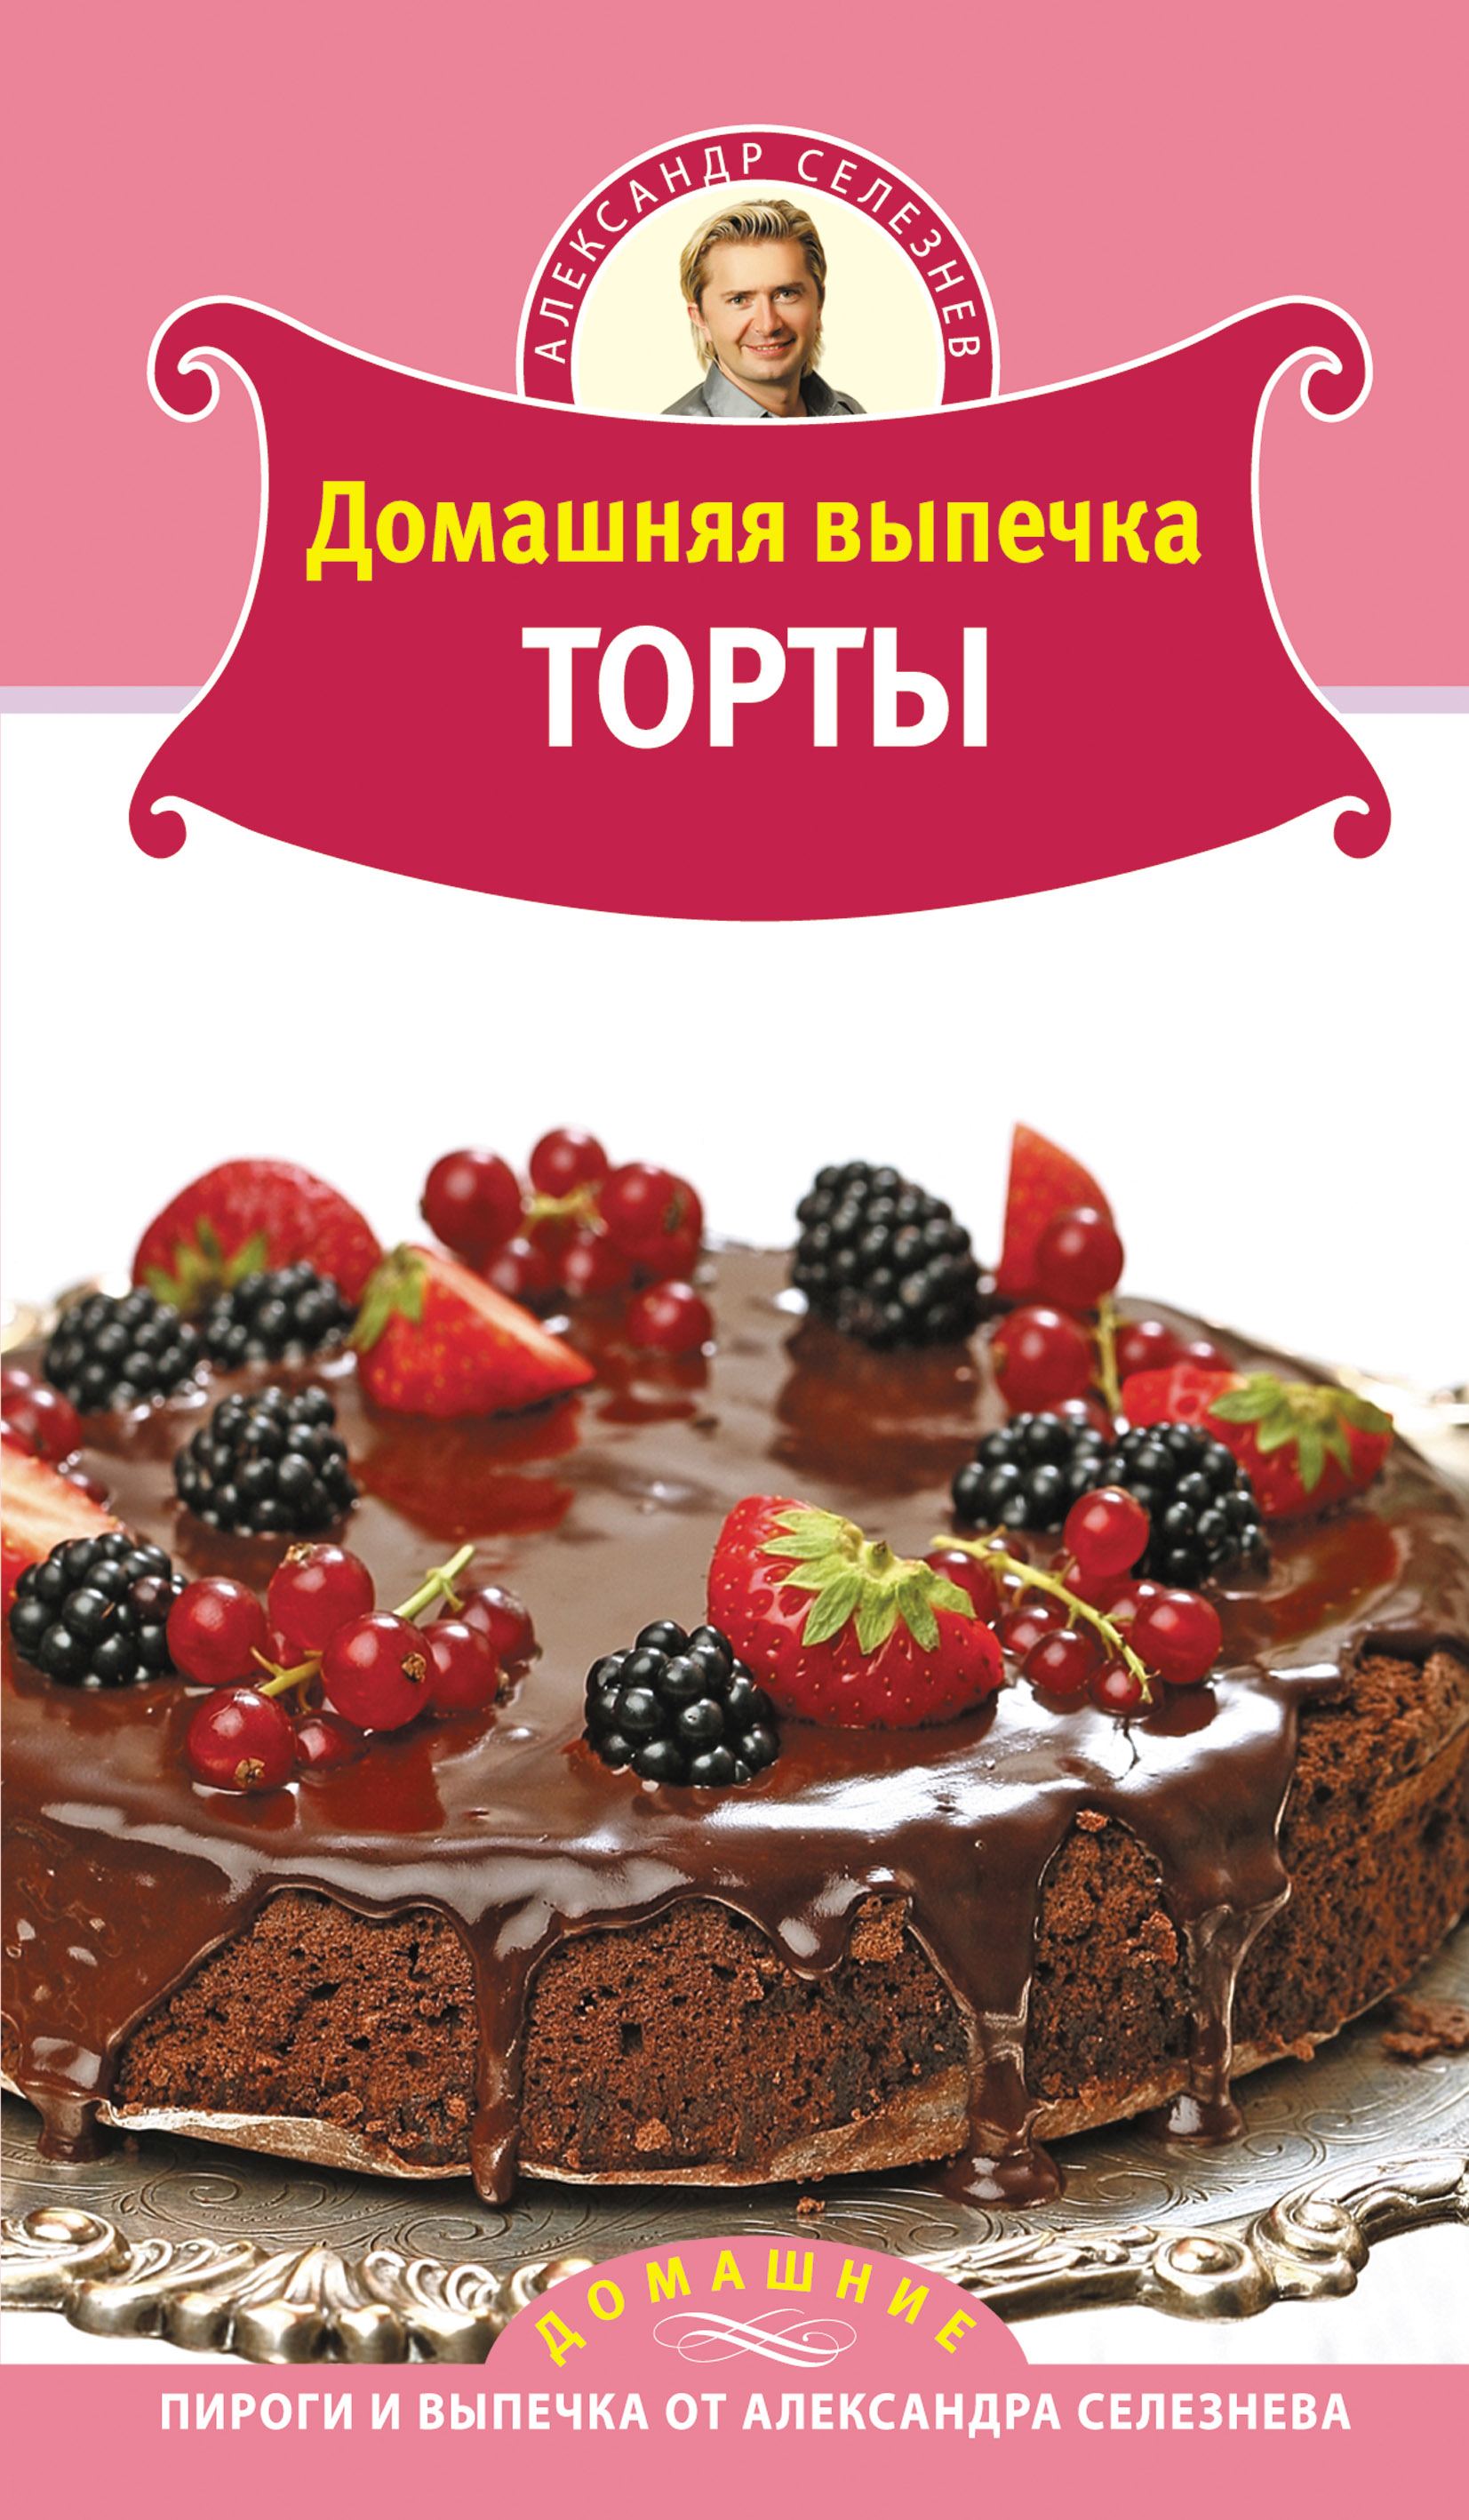 Кулинарная библиотека | Белорусский государственный университет пищевых и химических технологий